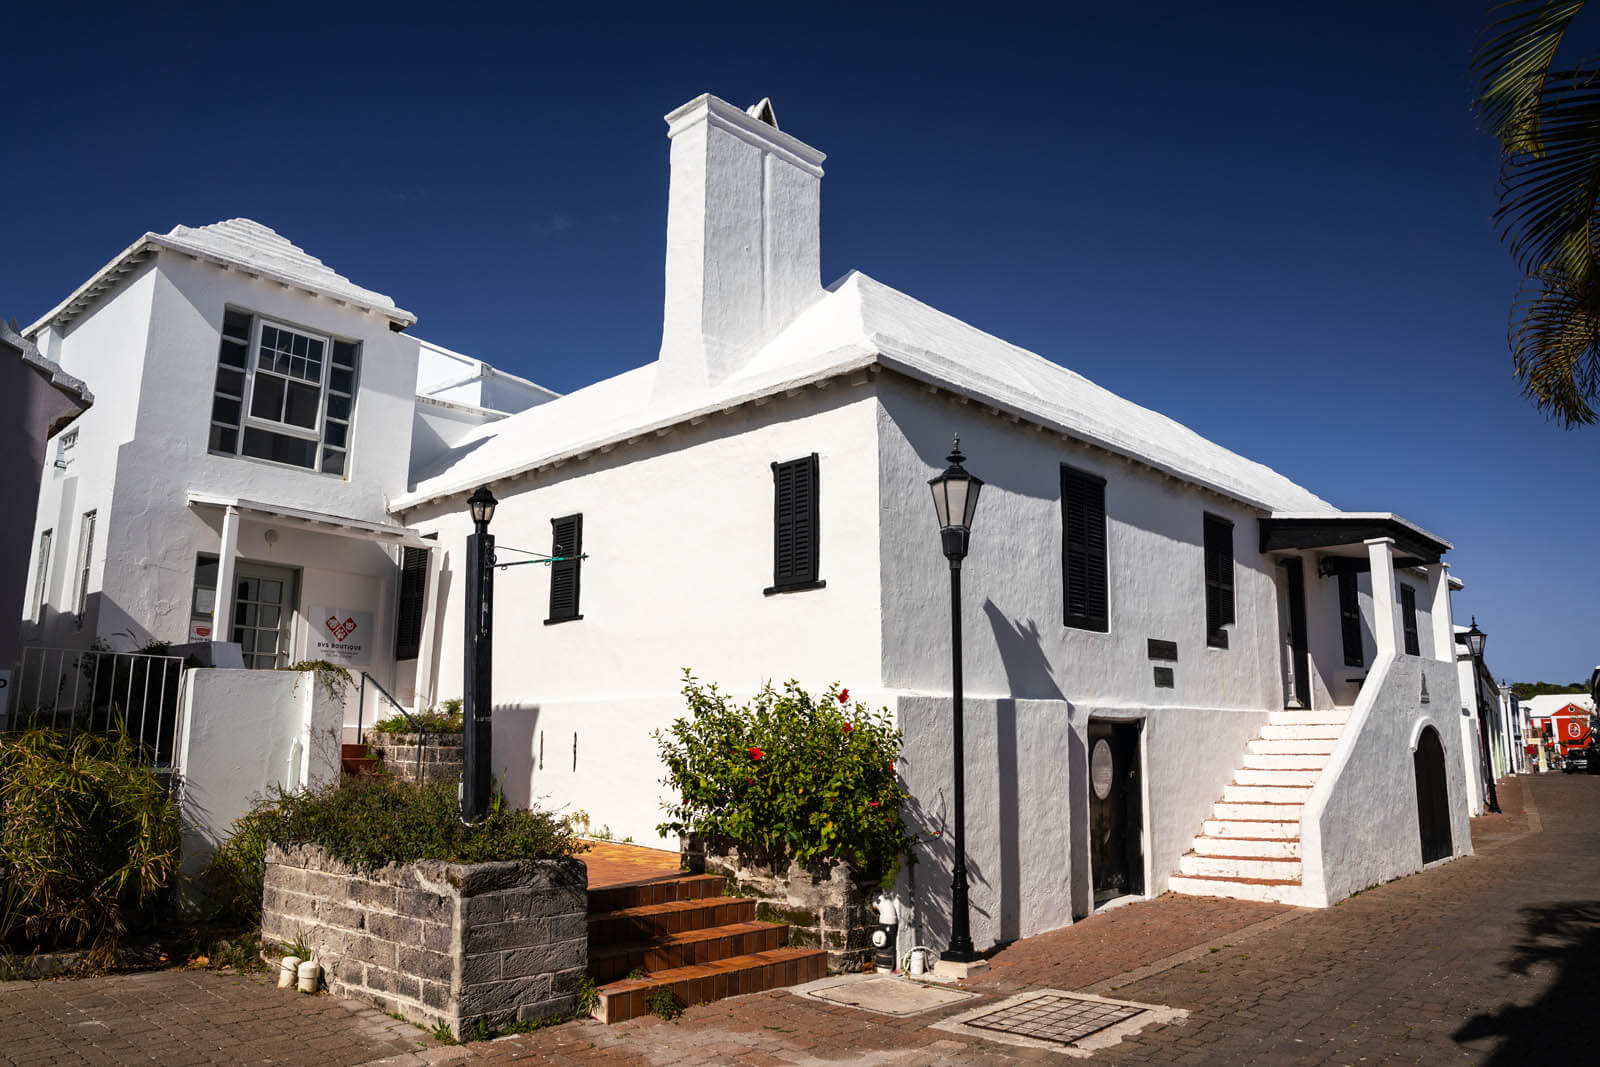 Tucker House Museum in St Georges Bermuda